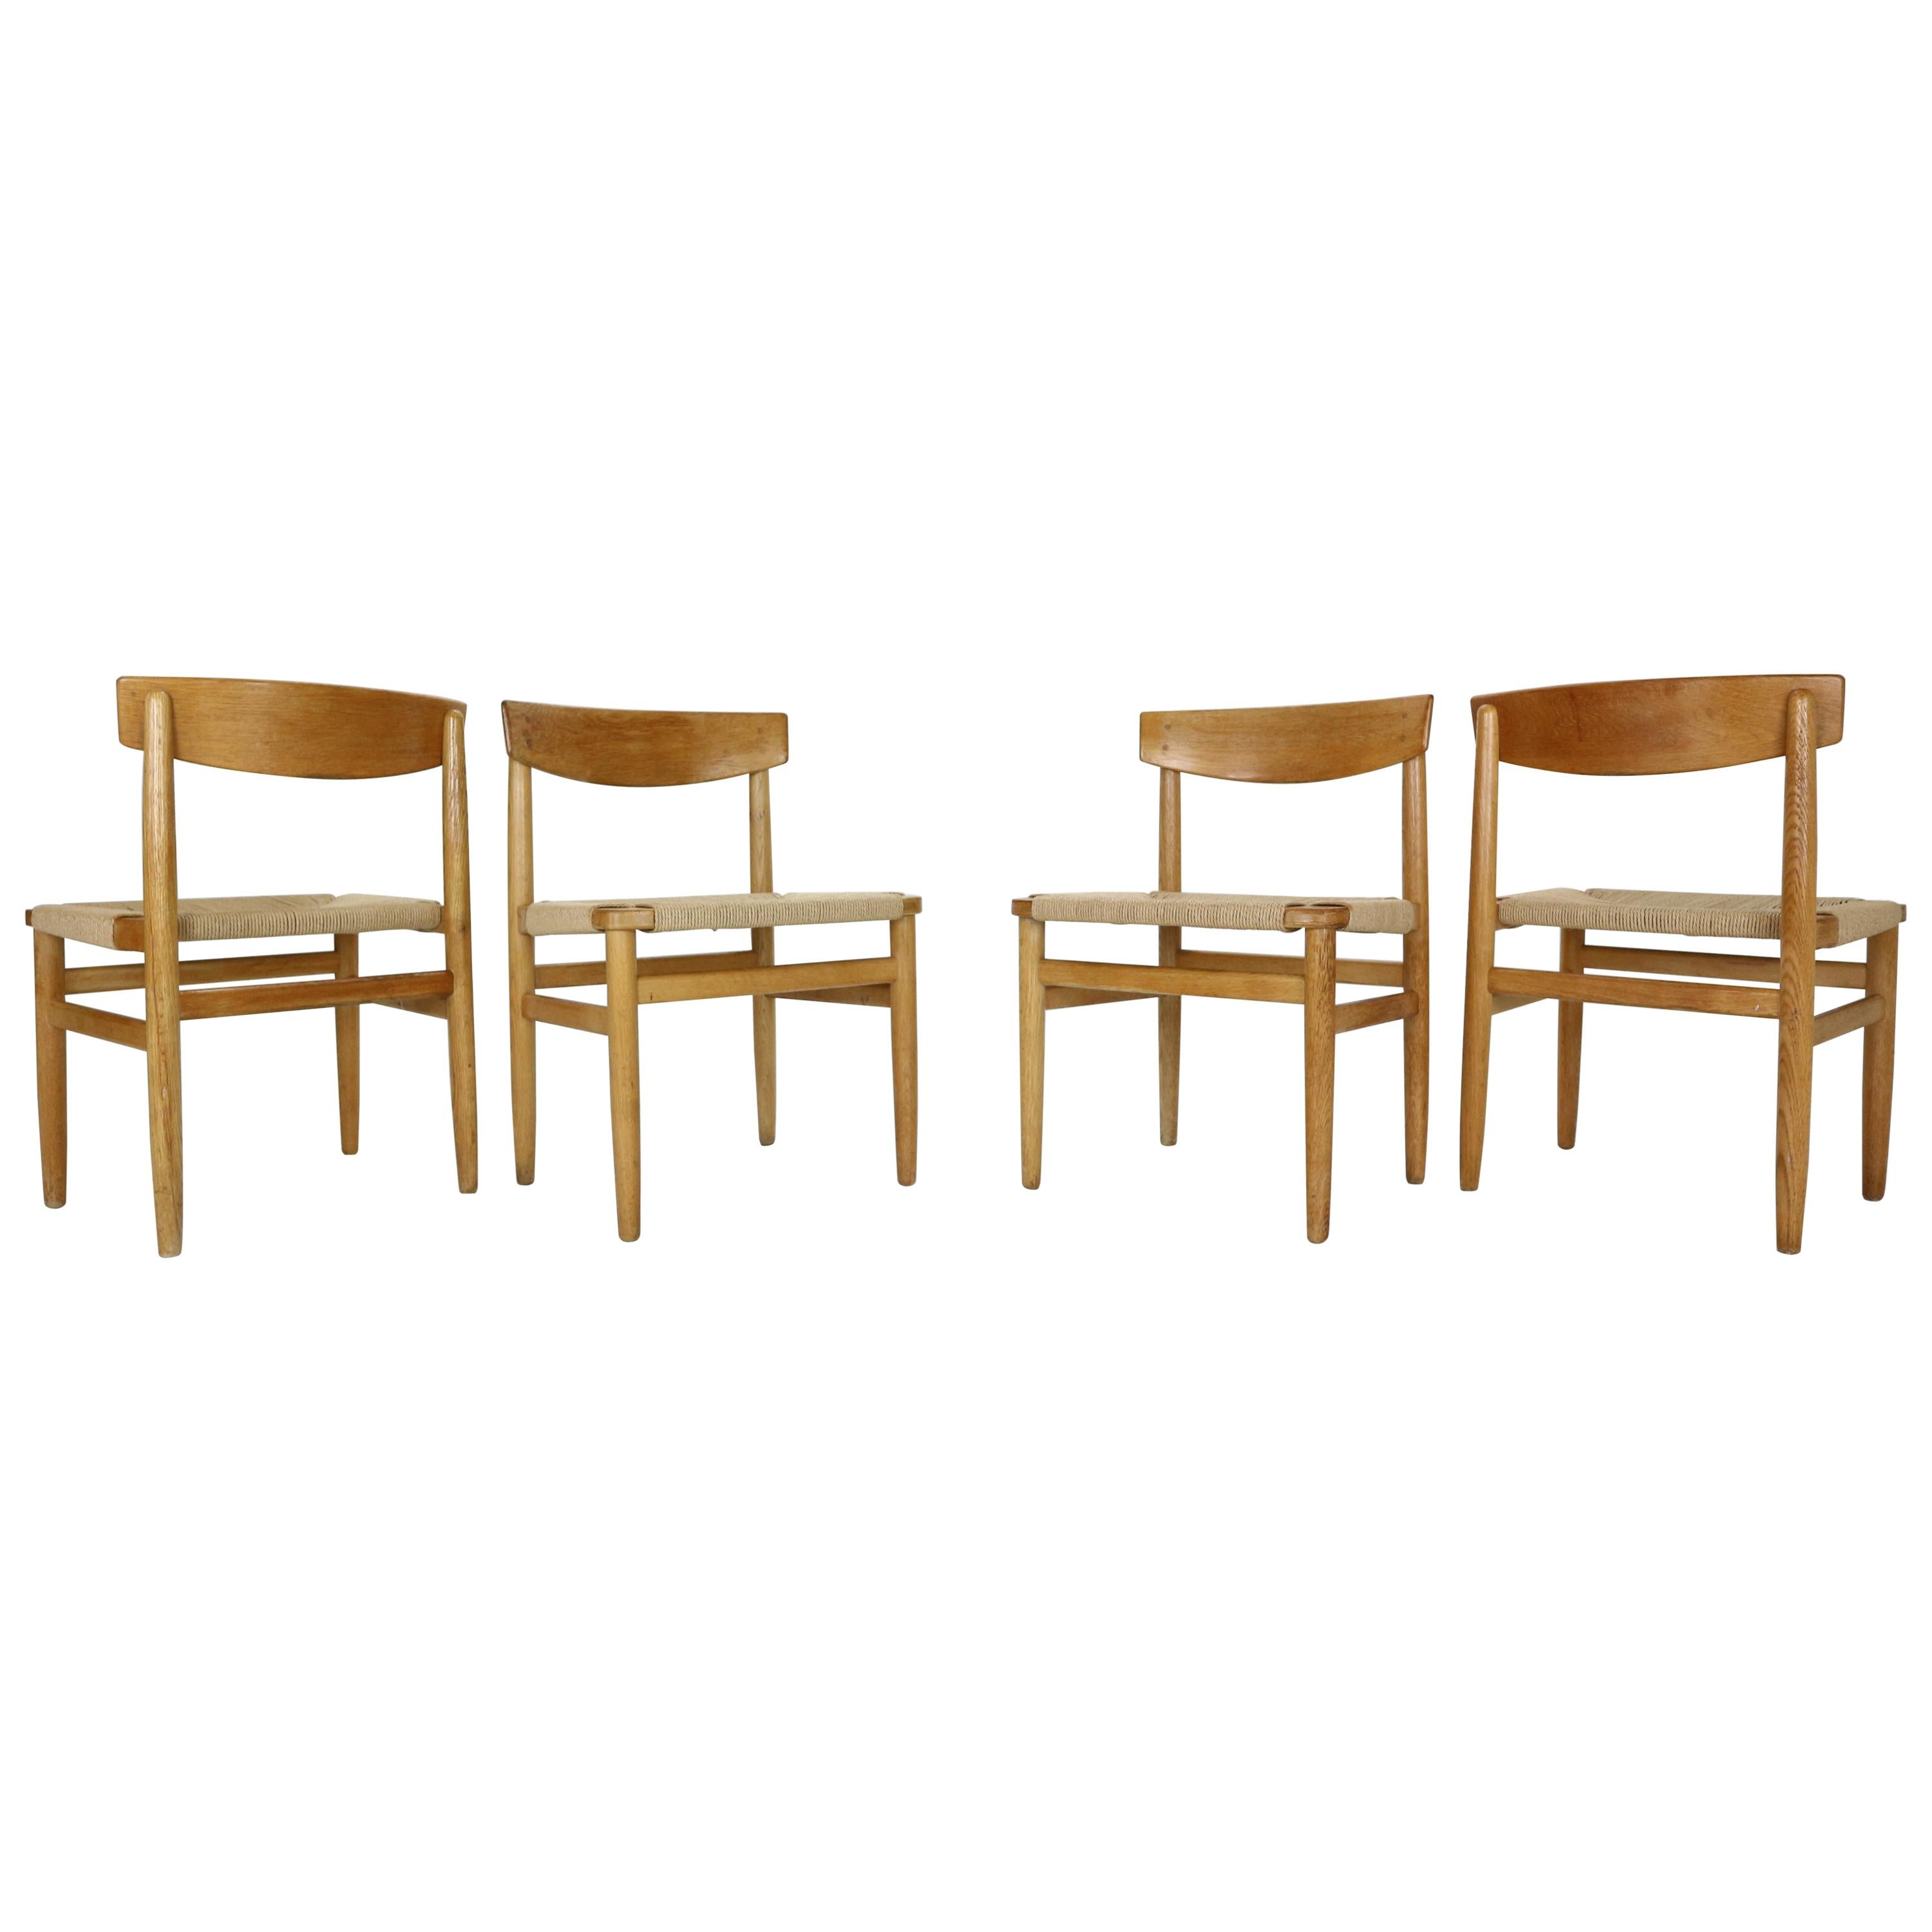 Børge Mogensen "Model-537 Øresund" Set of 4 Dining Oak Chairs for Karl Andersson